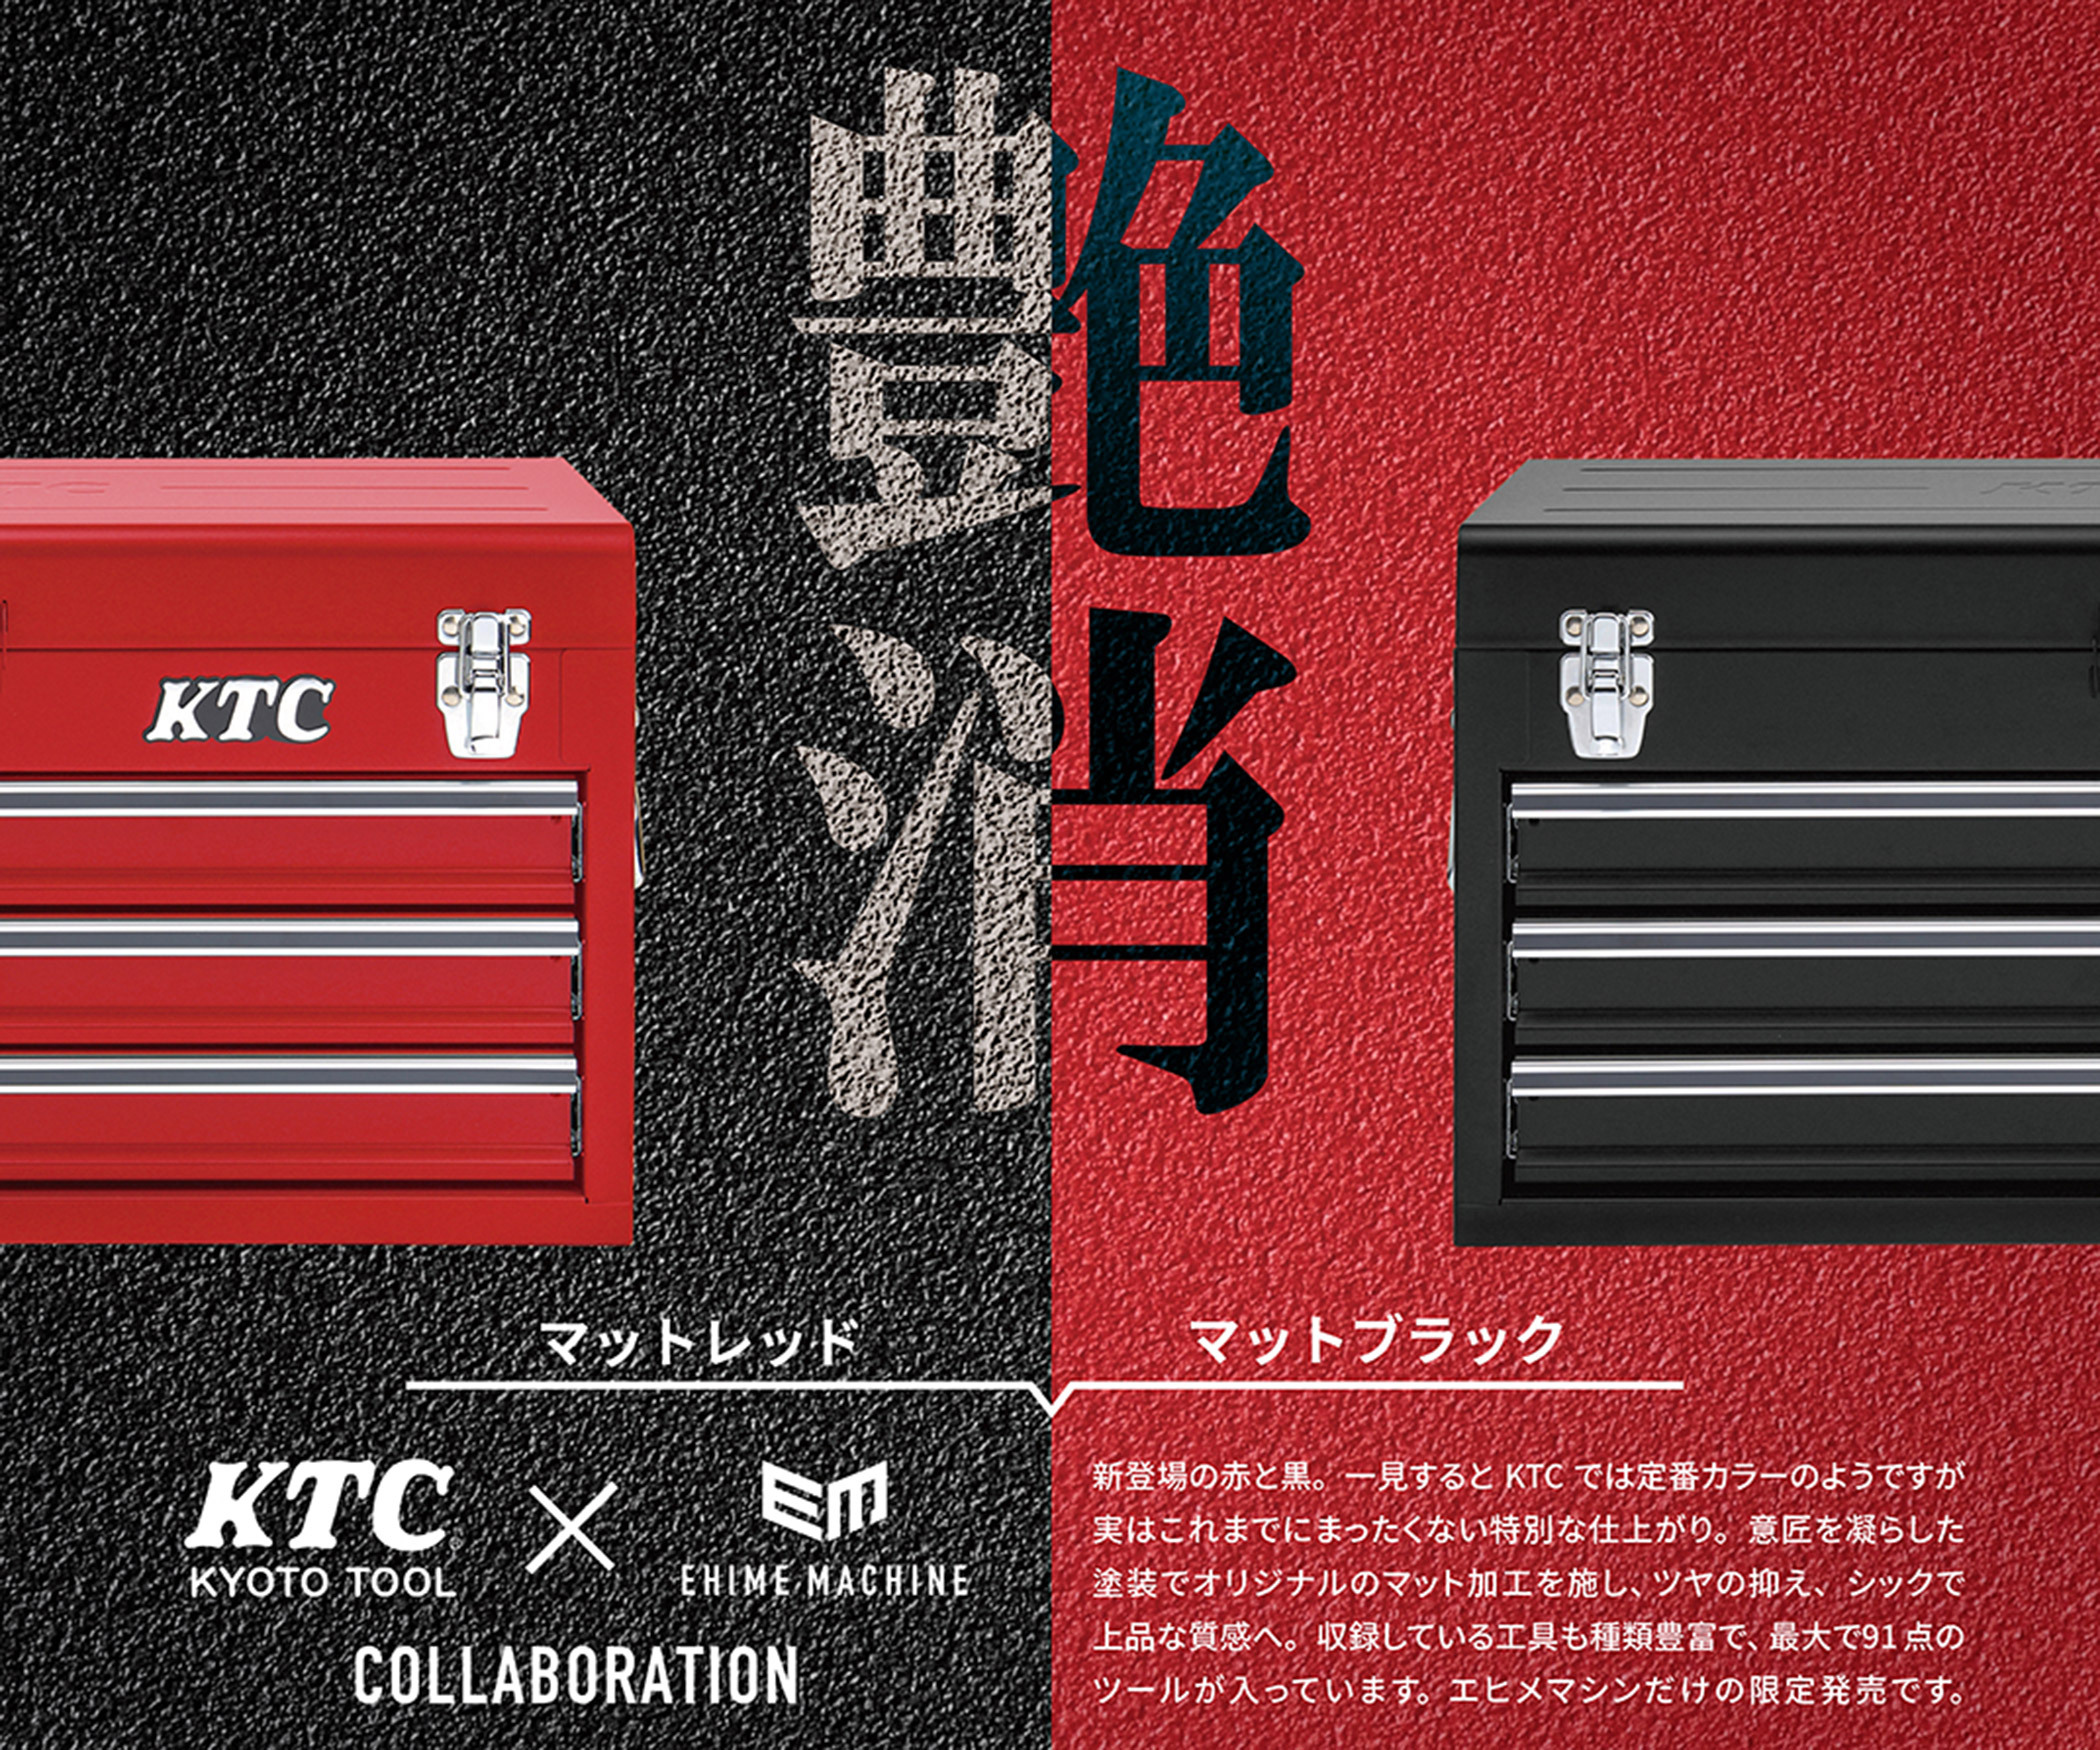 総合ハンドツールメーカー Ktc 工具販売ecサイト エヒメマシン 限定2色のコラボ オリジナルツールセット 発売 上質で高級感のあるマットレッドと マットブラック 株式会社エヒメマシンのプレスリリース